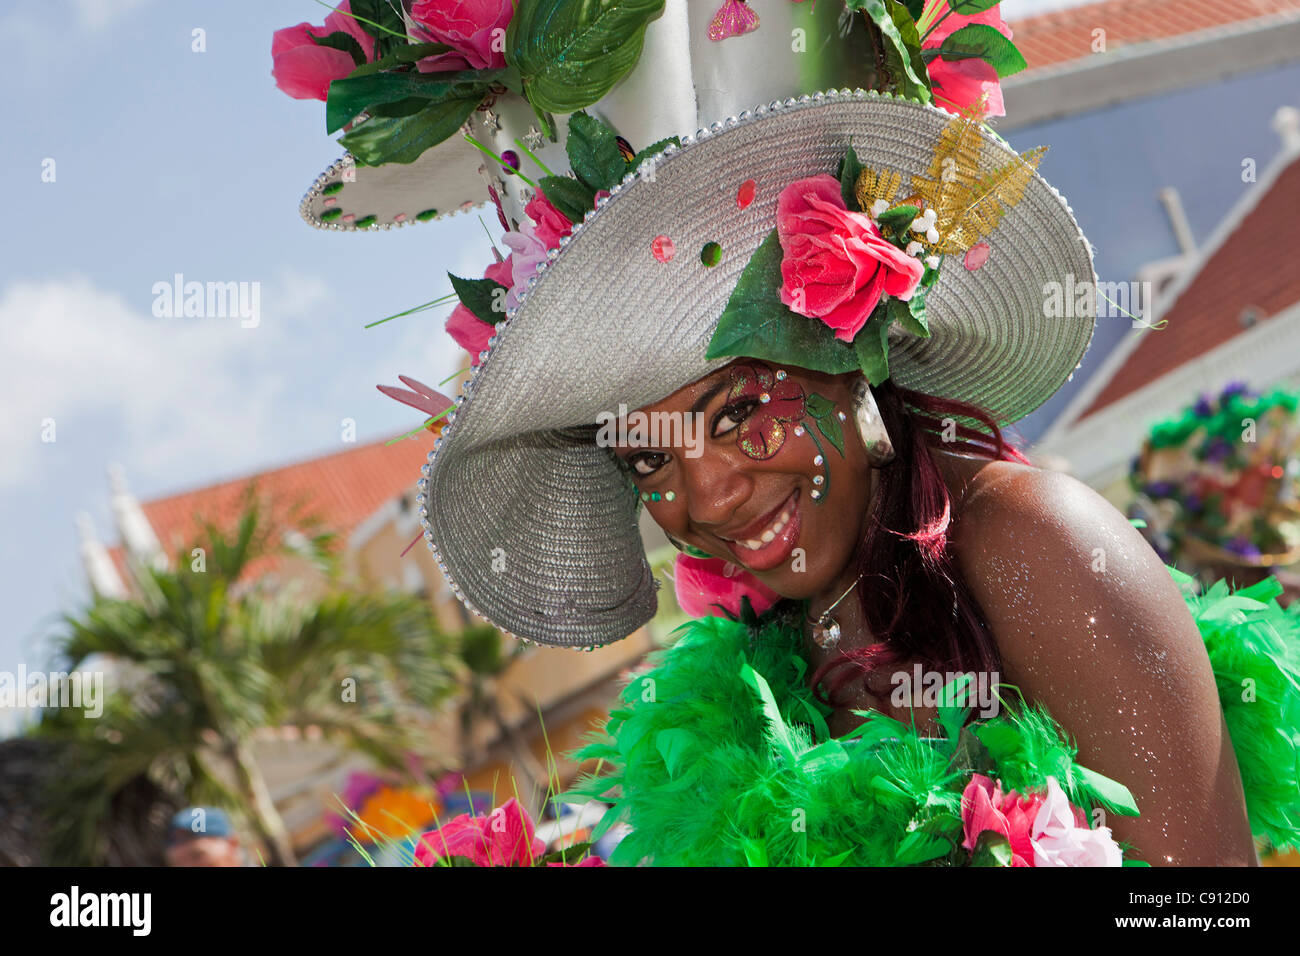 Decoración de carnaval con sombrero de carnaval e imágenes de alta resolución - Alamy